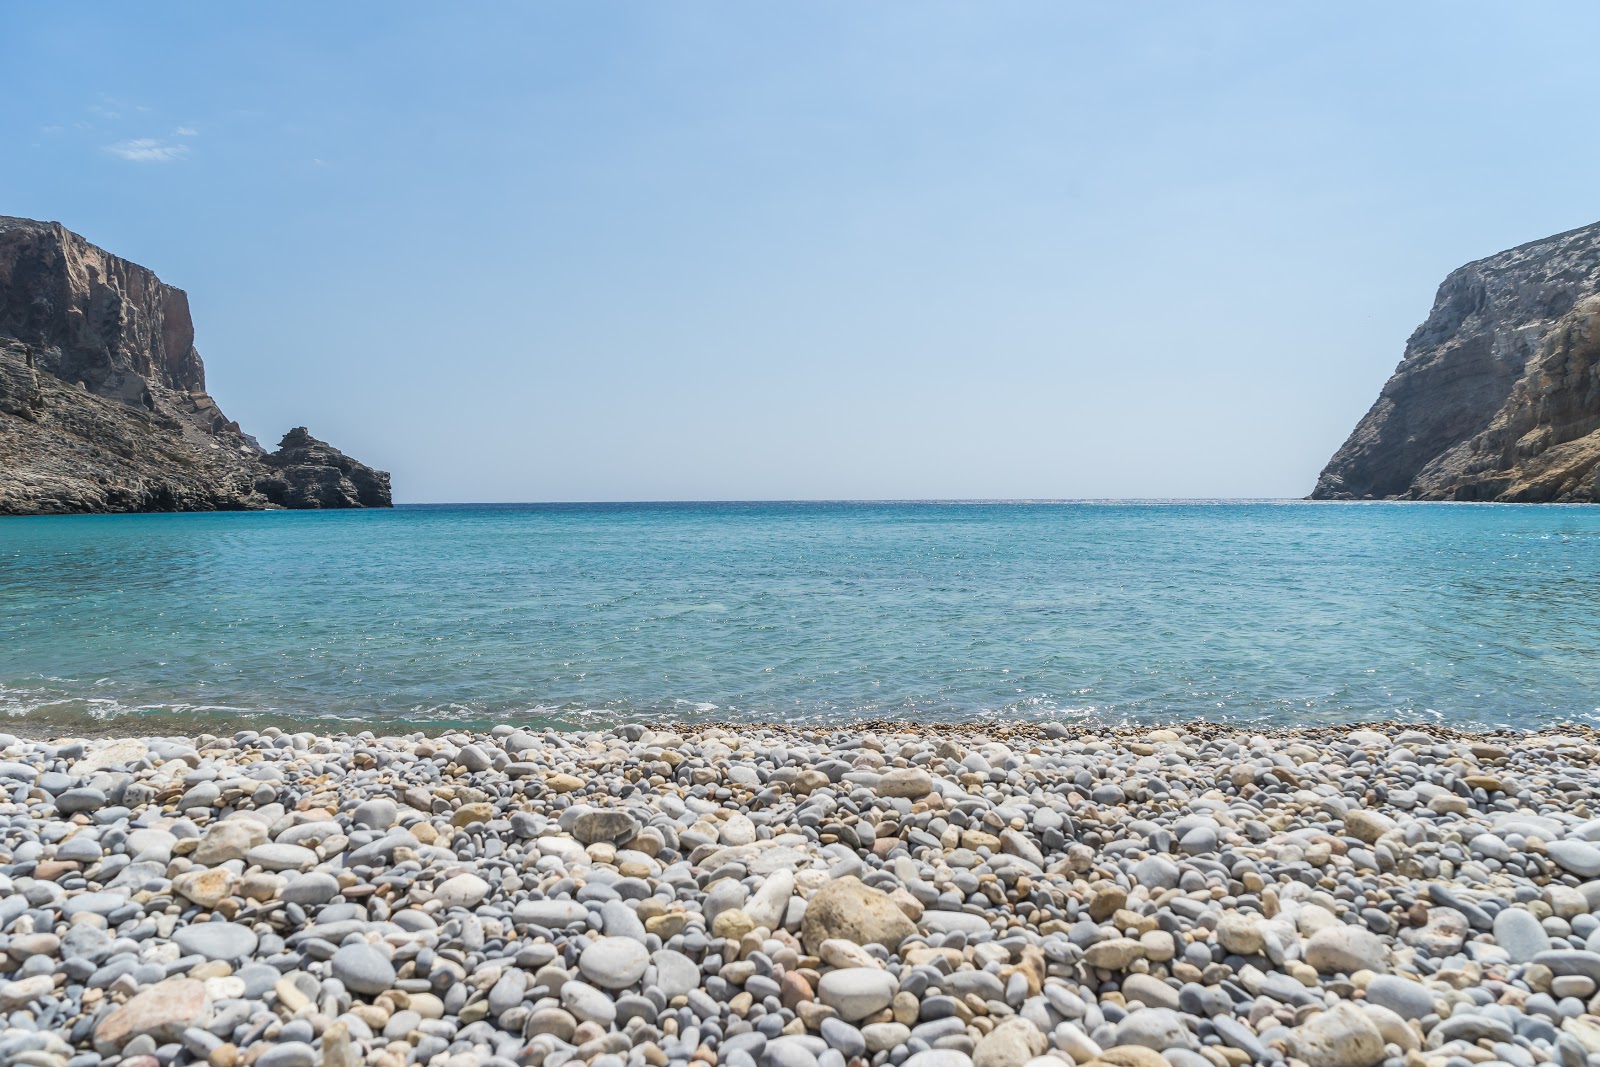 Foto de Helatros Beach Kasos Greece com alto nível de limpeza